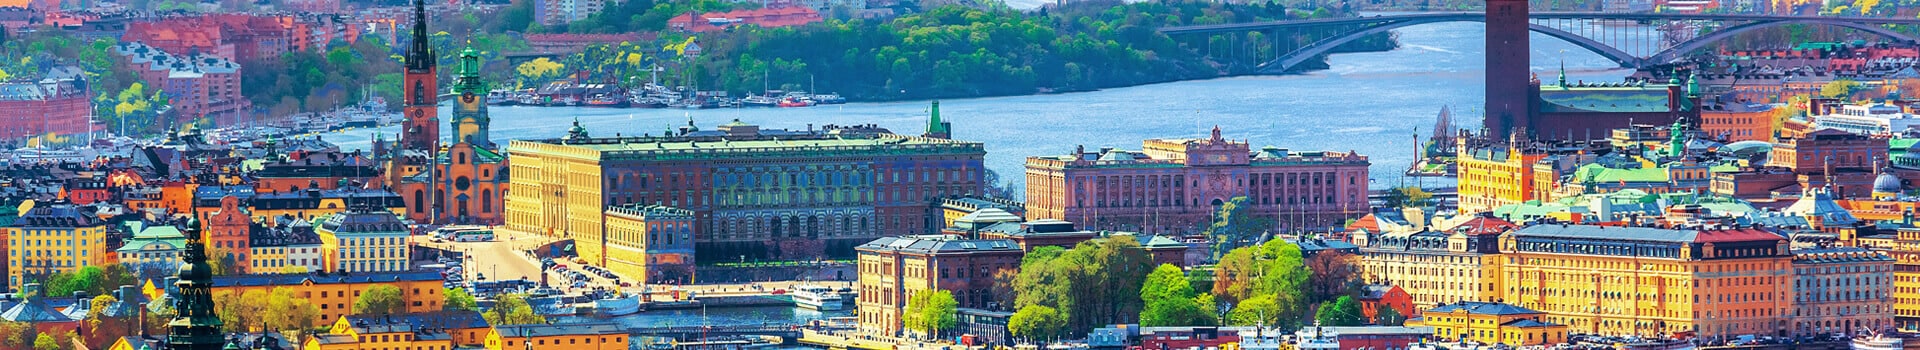 Goteborg - Estocolmo